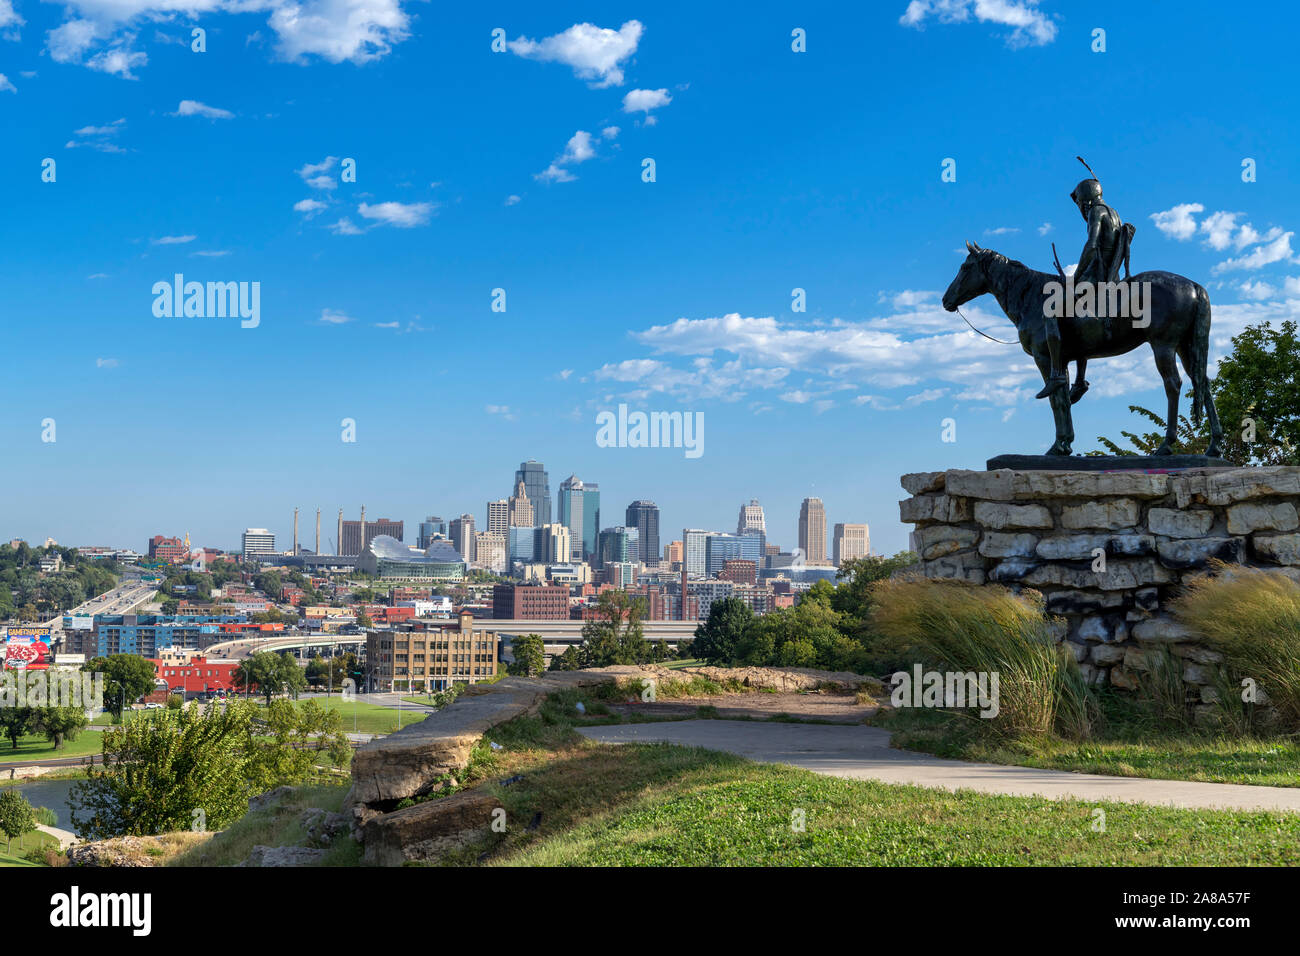 Blick auf die Skyline der Innenstadt von Penn Valley Park, Kansas City, Missouri, USA. Cyrus Dallin die Statue eines Sioux Indan, der Scout, im Vordergrund. Stockfoto